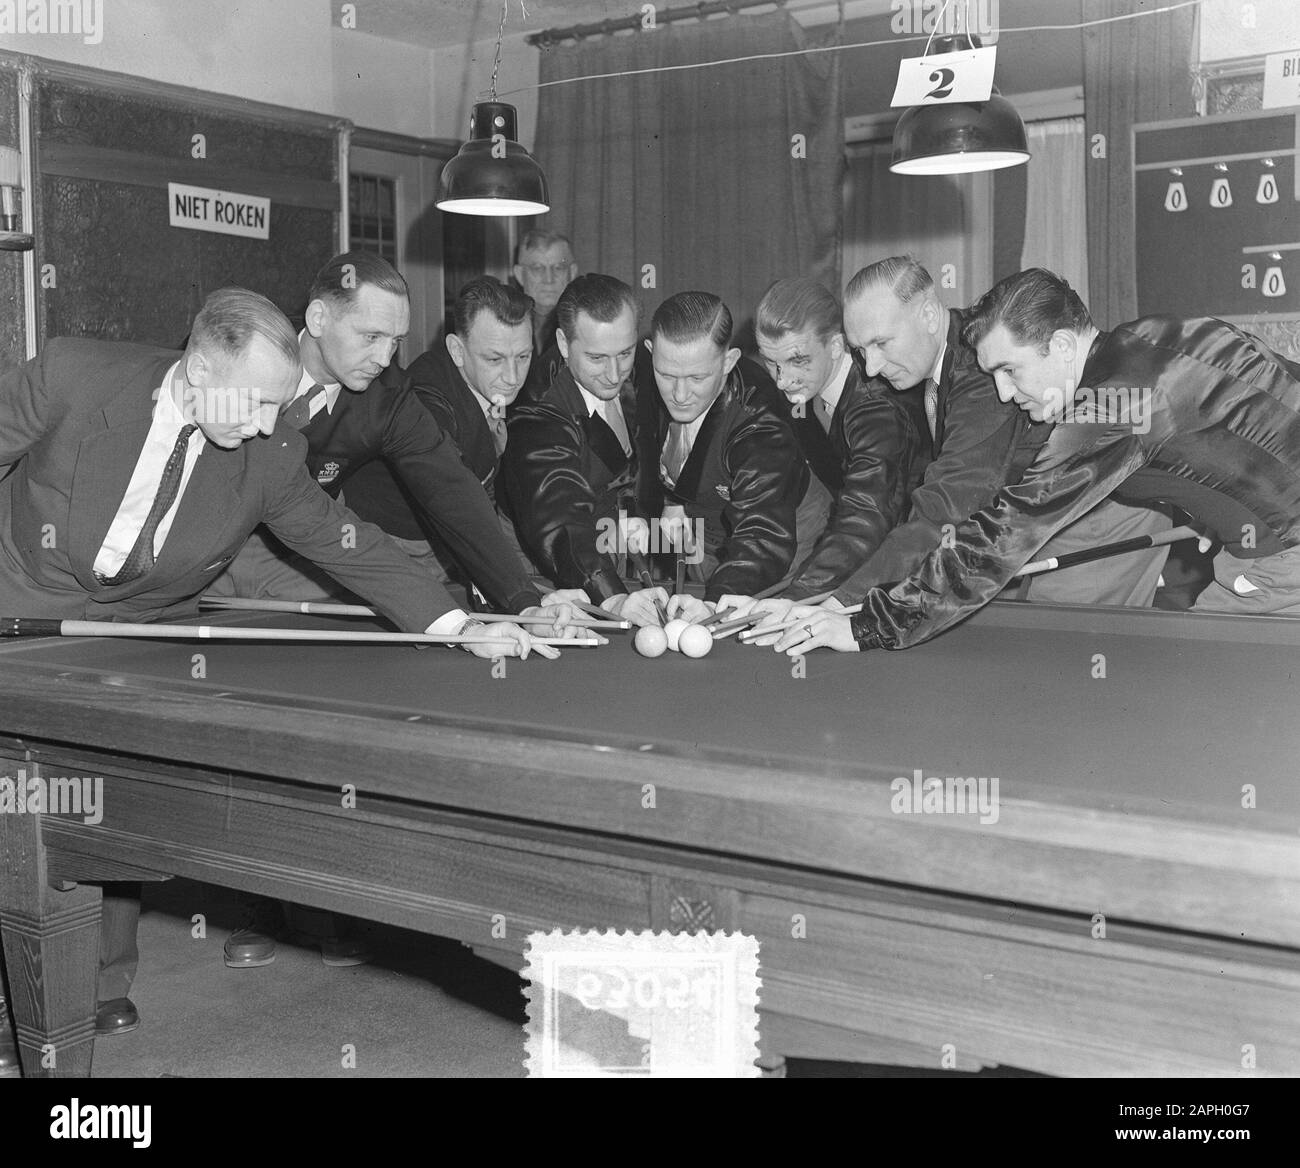 Démarrer les poinçons de championnat Scratch participants Date: 19 février 1954 mots clés: Billard, portraits de groupe Banque D'Images